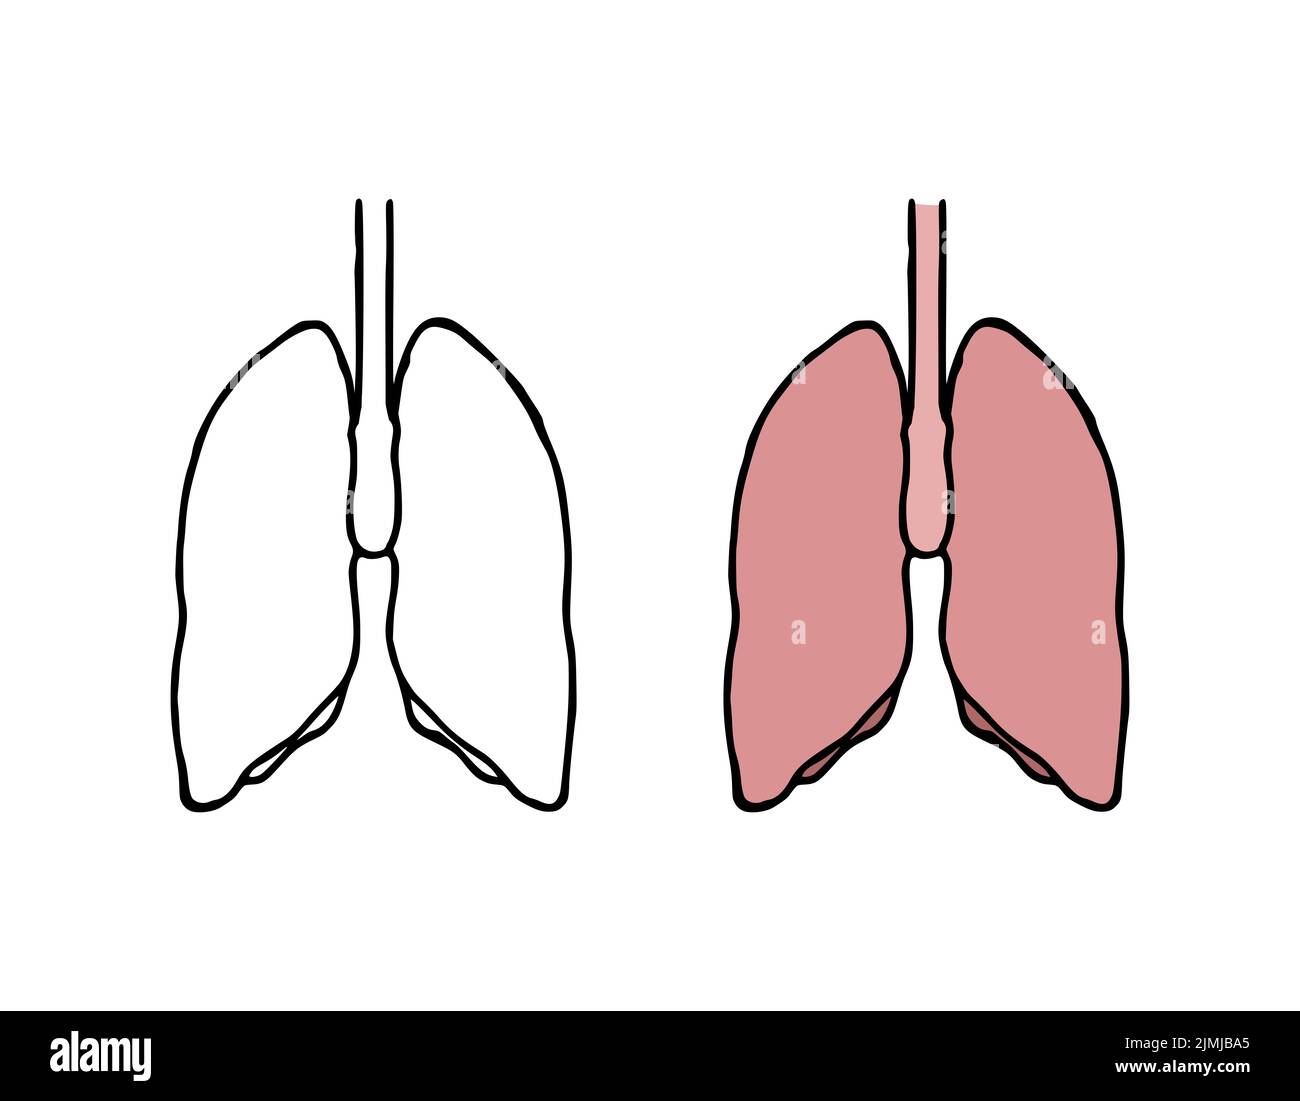 Illustration du vecteur de l'oeddle des poumons. Organe interne humain de style dessiné à la main Banque D'Images